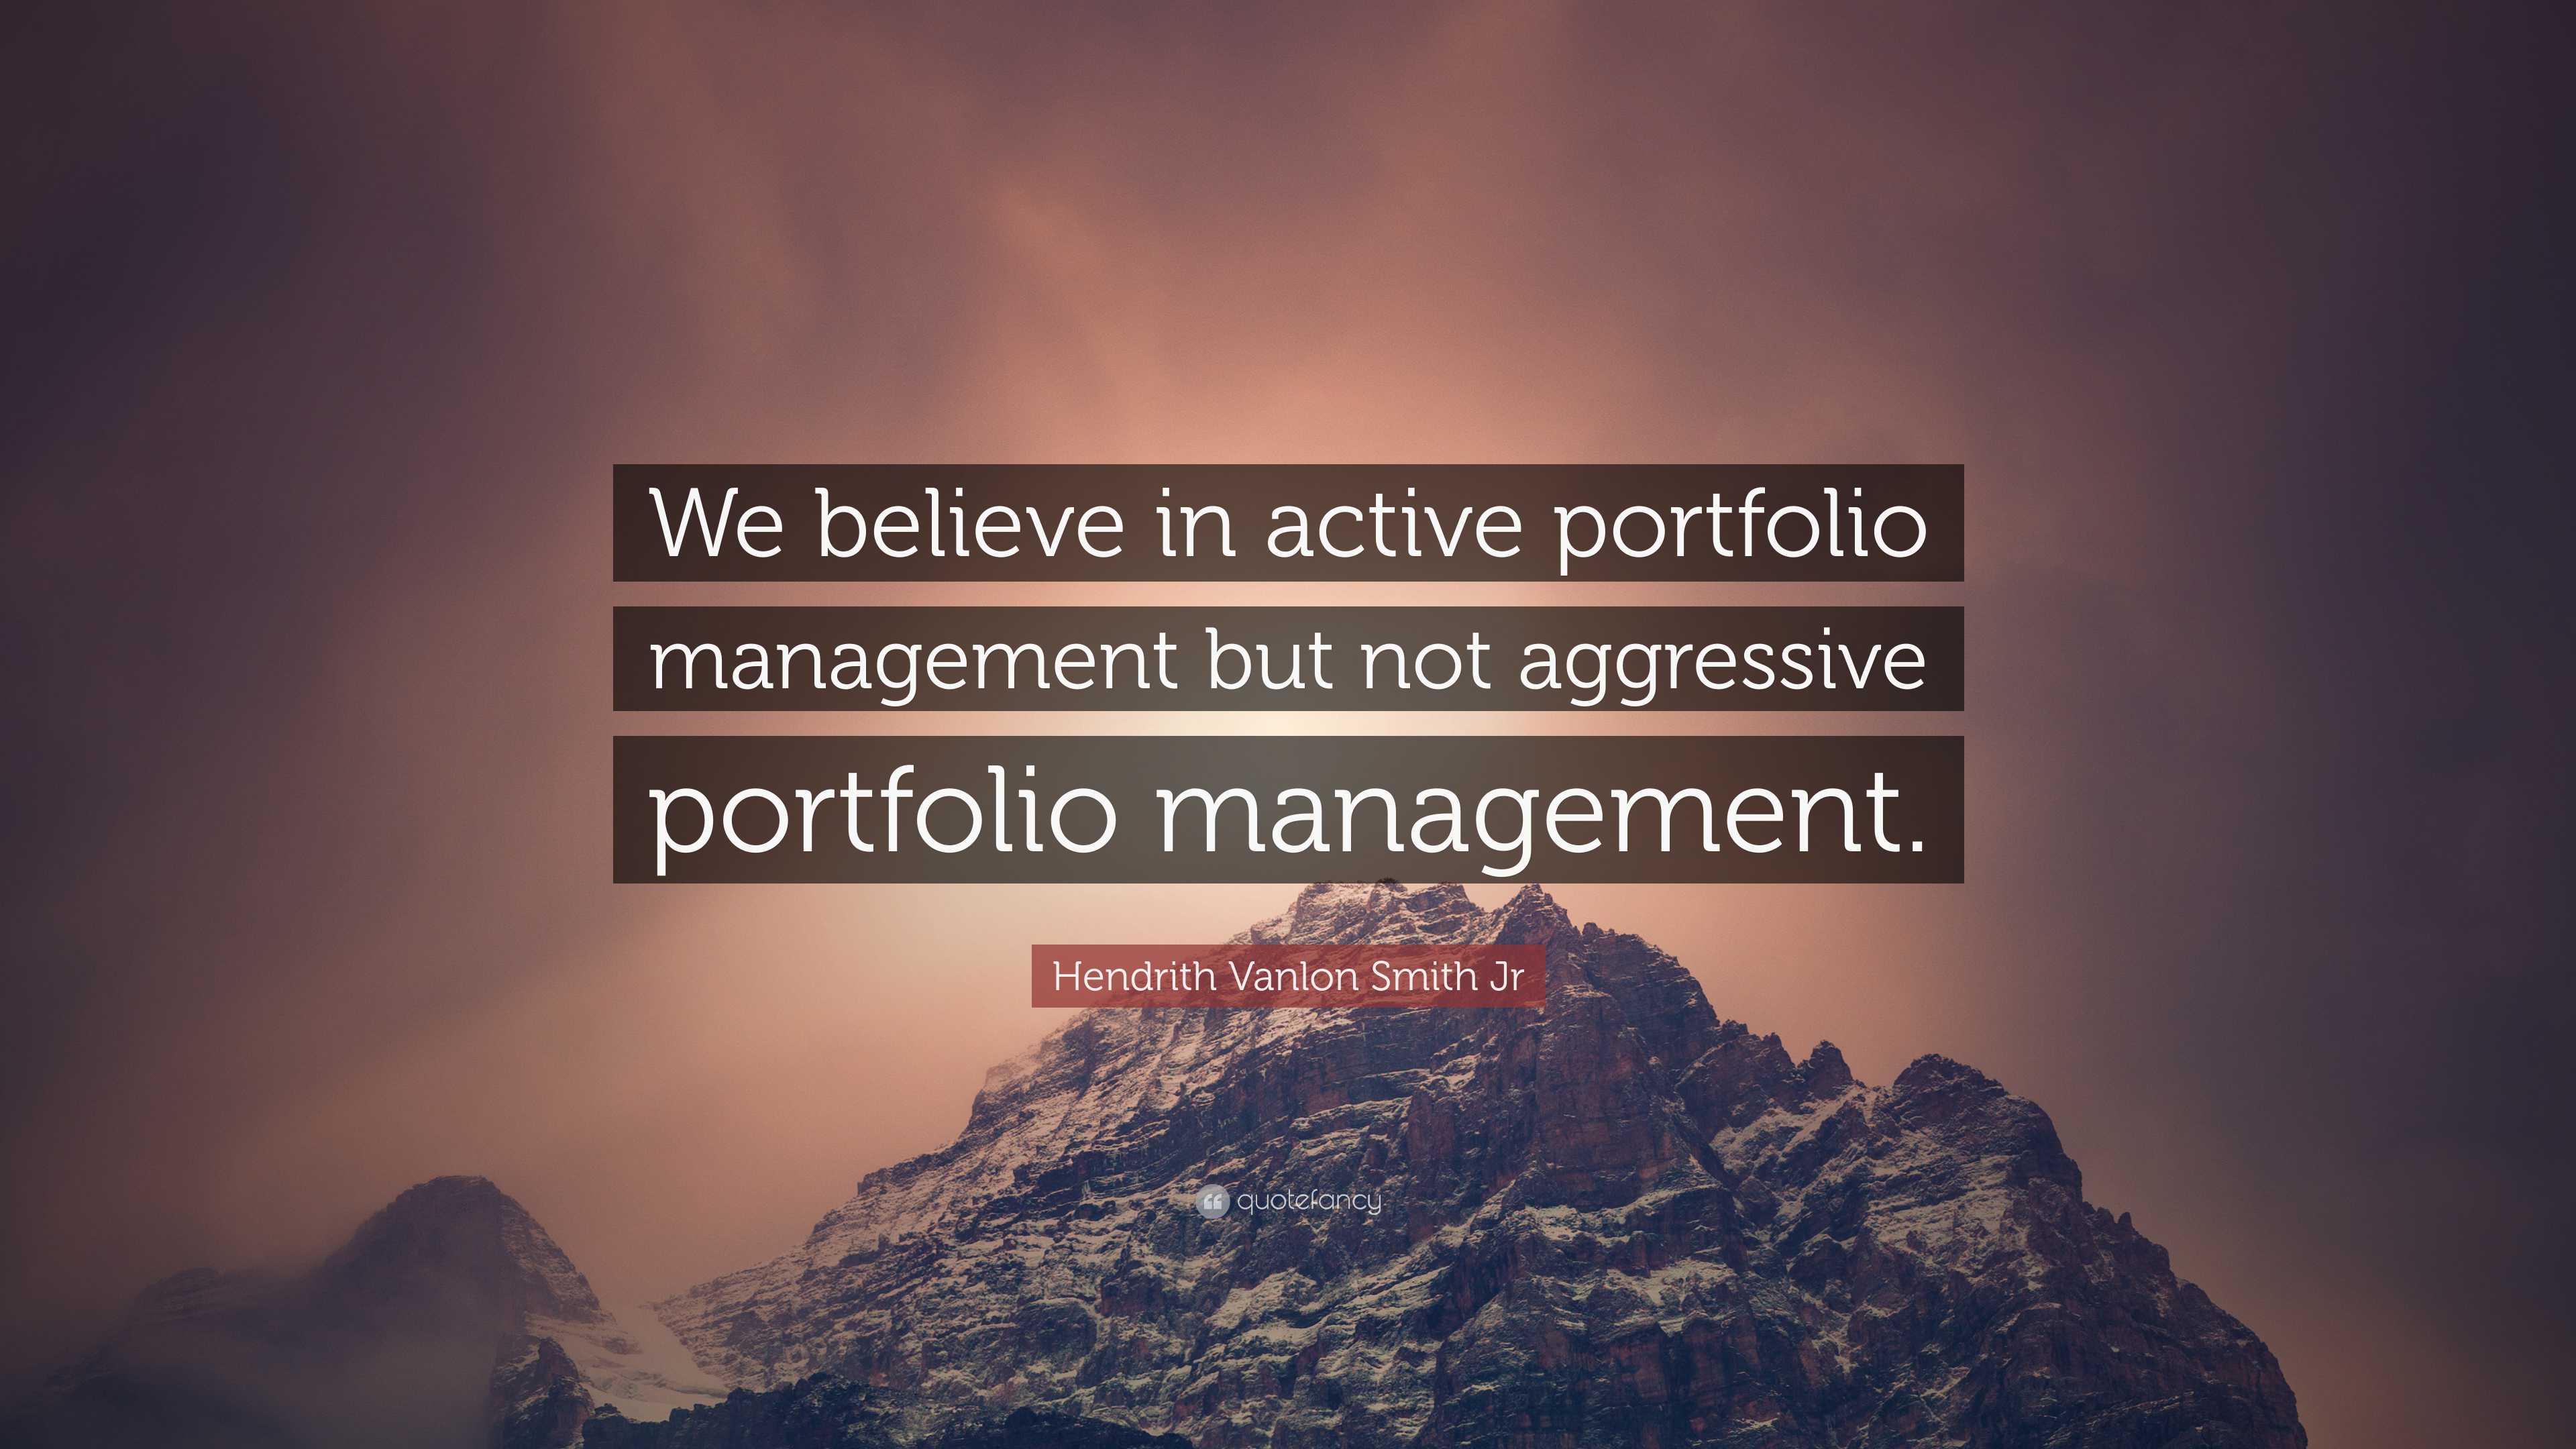 Hendrith Vanlon Smith Jr Quote: “We believe in active portfolio